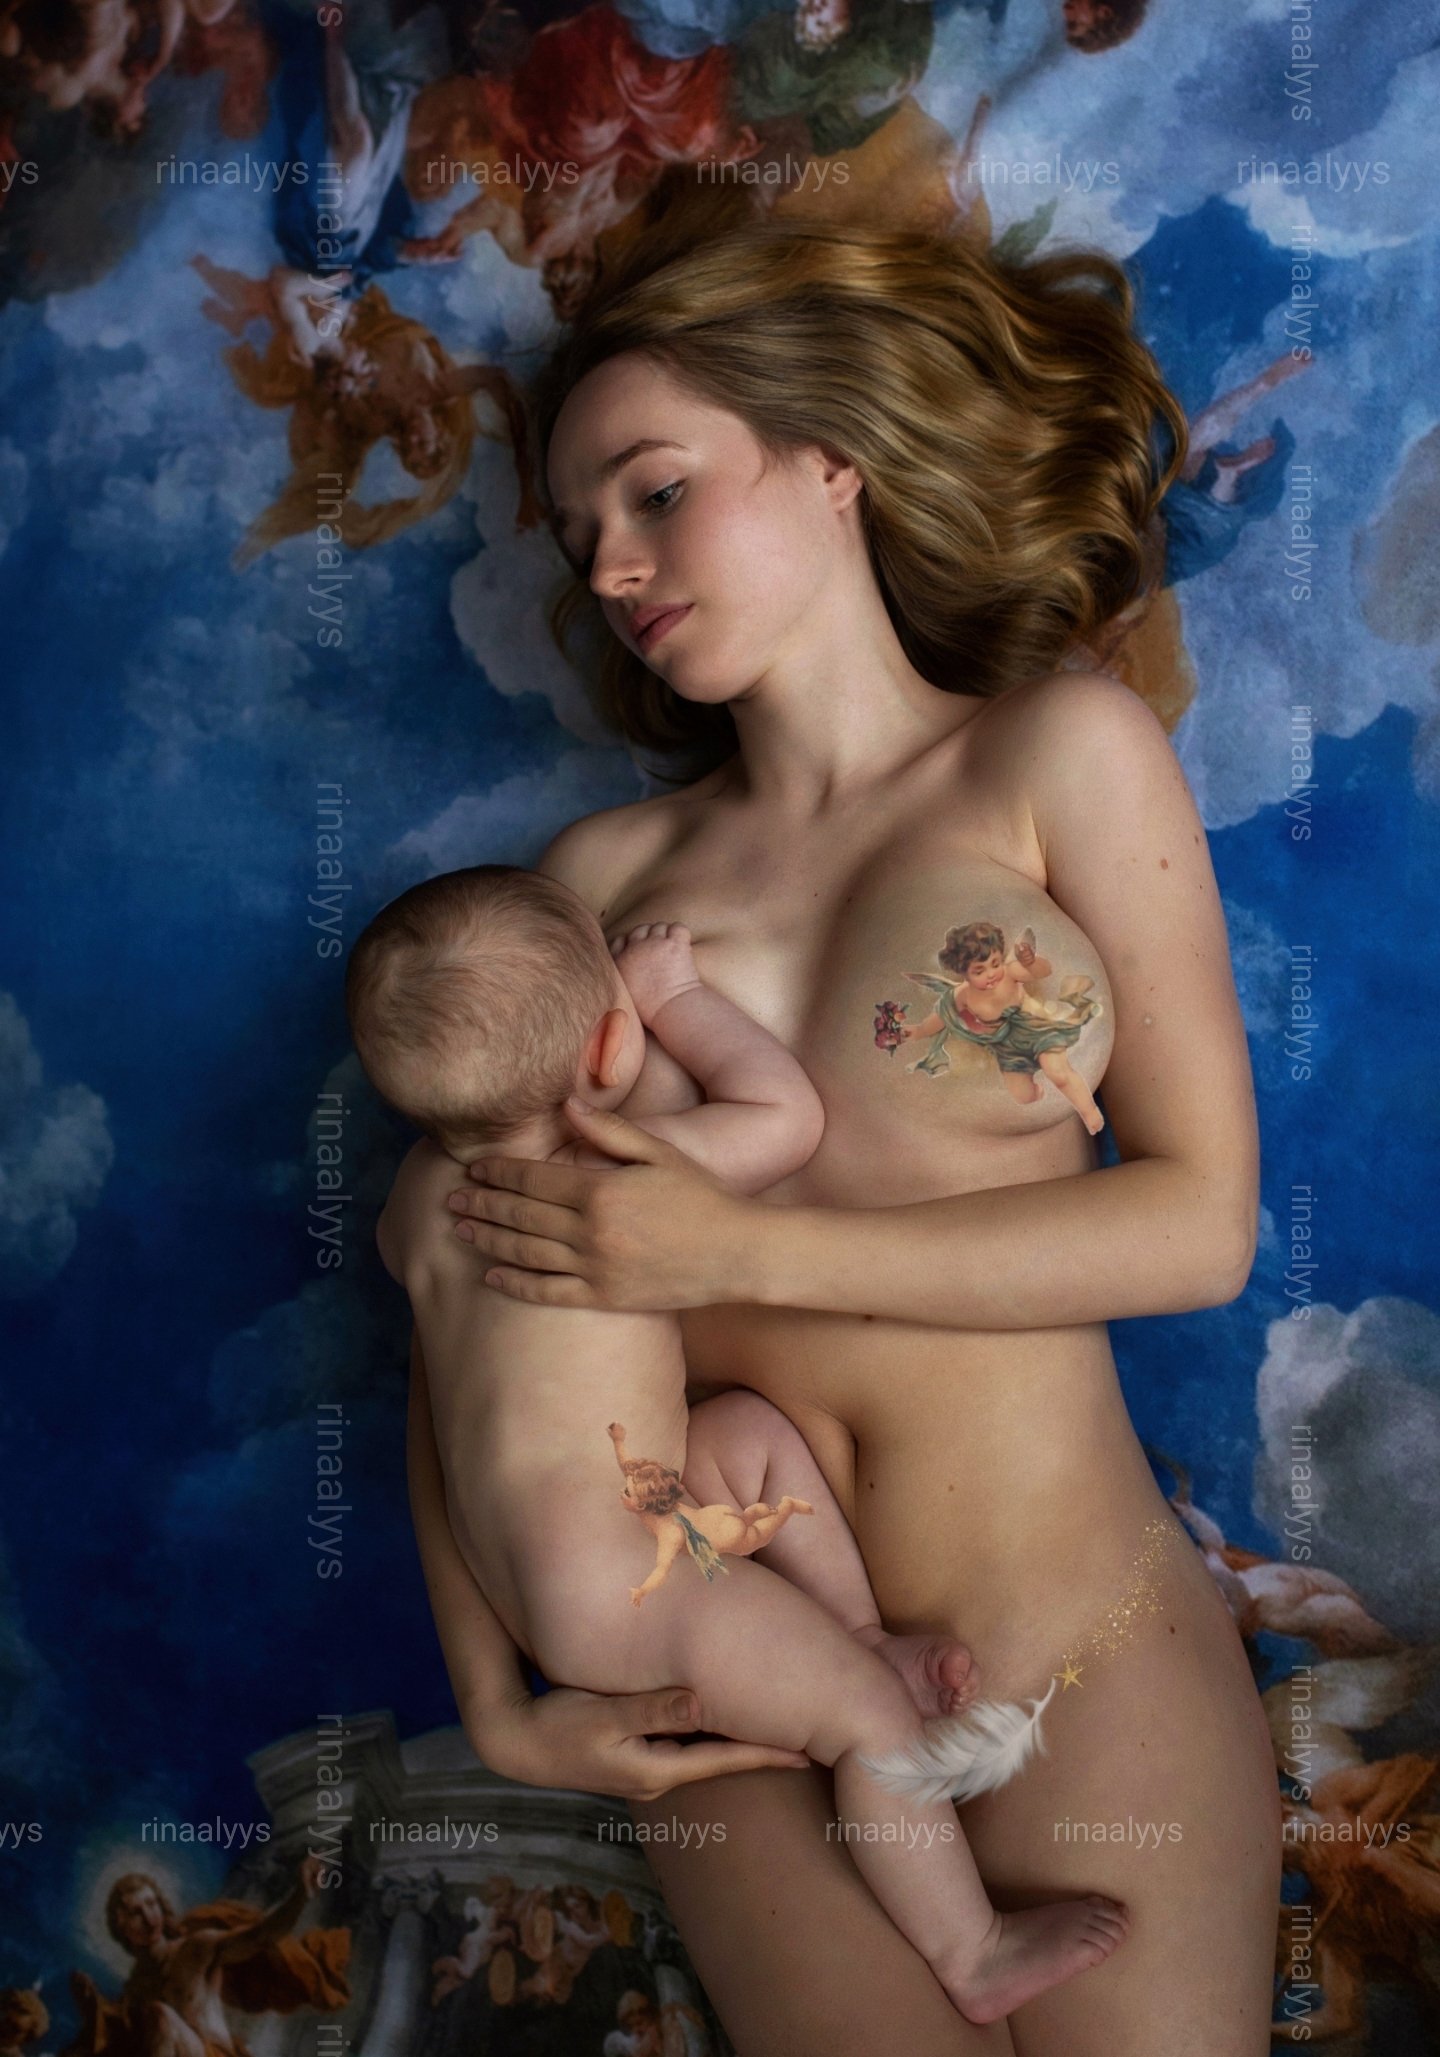 幼齒像學生？烏克蘭人妻《rinaalyys》熱愛裸身有孕也是照樣拍騷照！